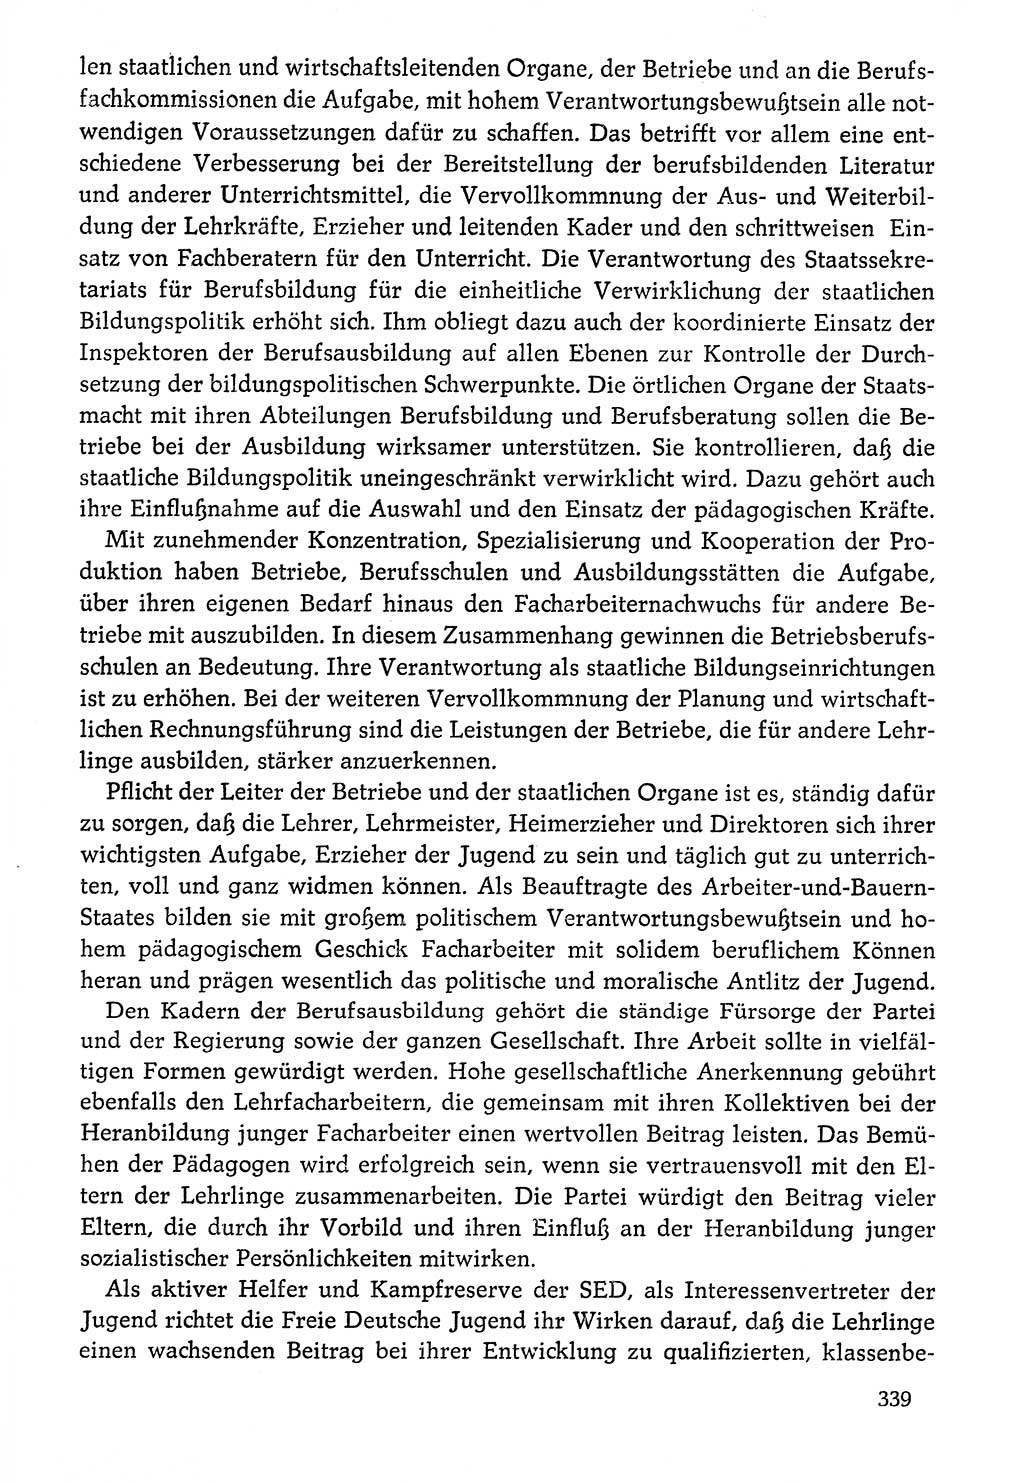 Dokumente der Sozialistischen Einheitspartei Deutschlands (SED) [Deutsche Demokratische Republik (DDR)] 1976-1977, Seite 339 (Dok. SED DDR 1976-1977, S. 339)